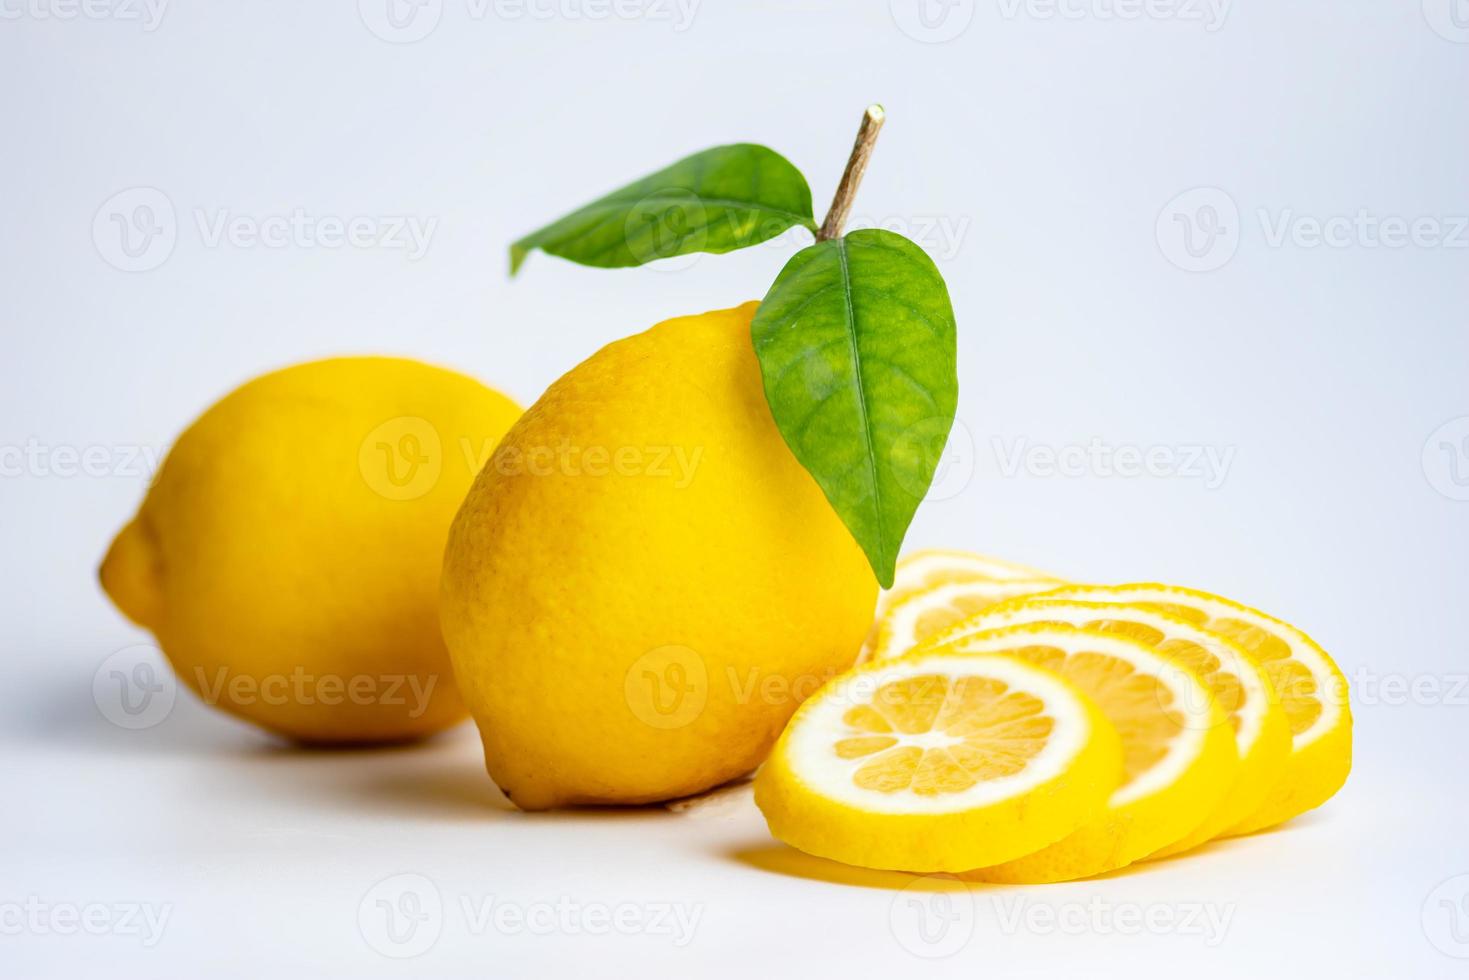 citronen och citronskivan på den vita bakgrunden foto